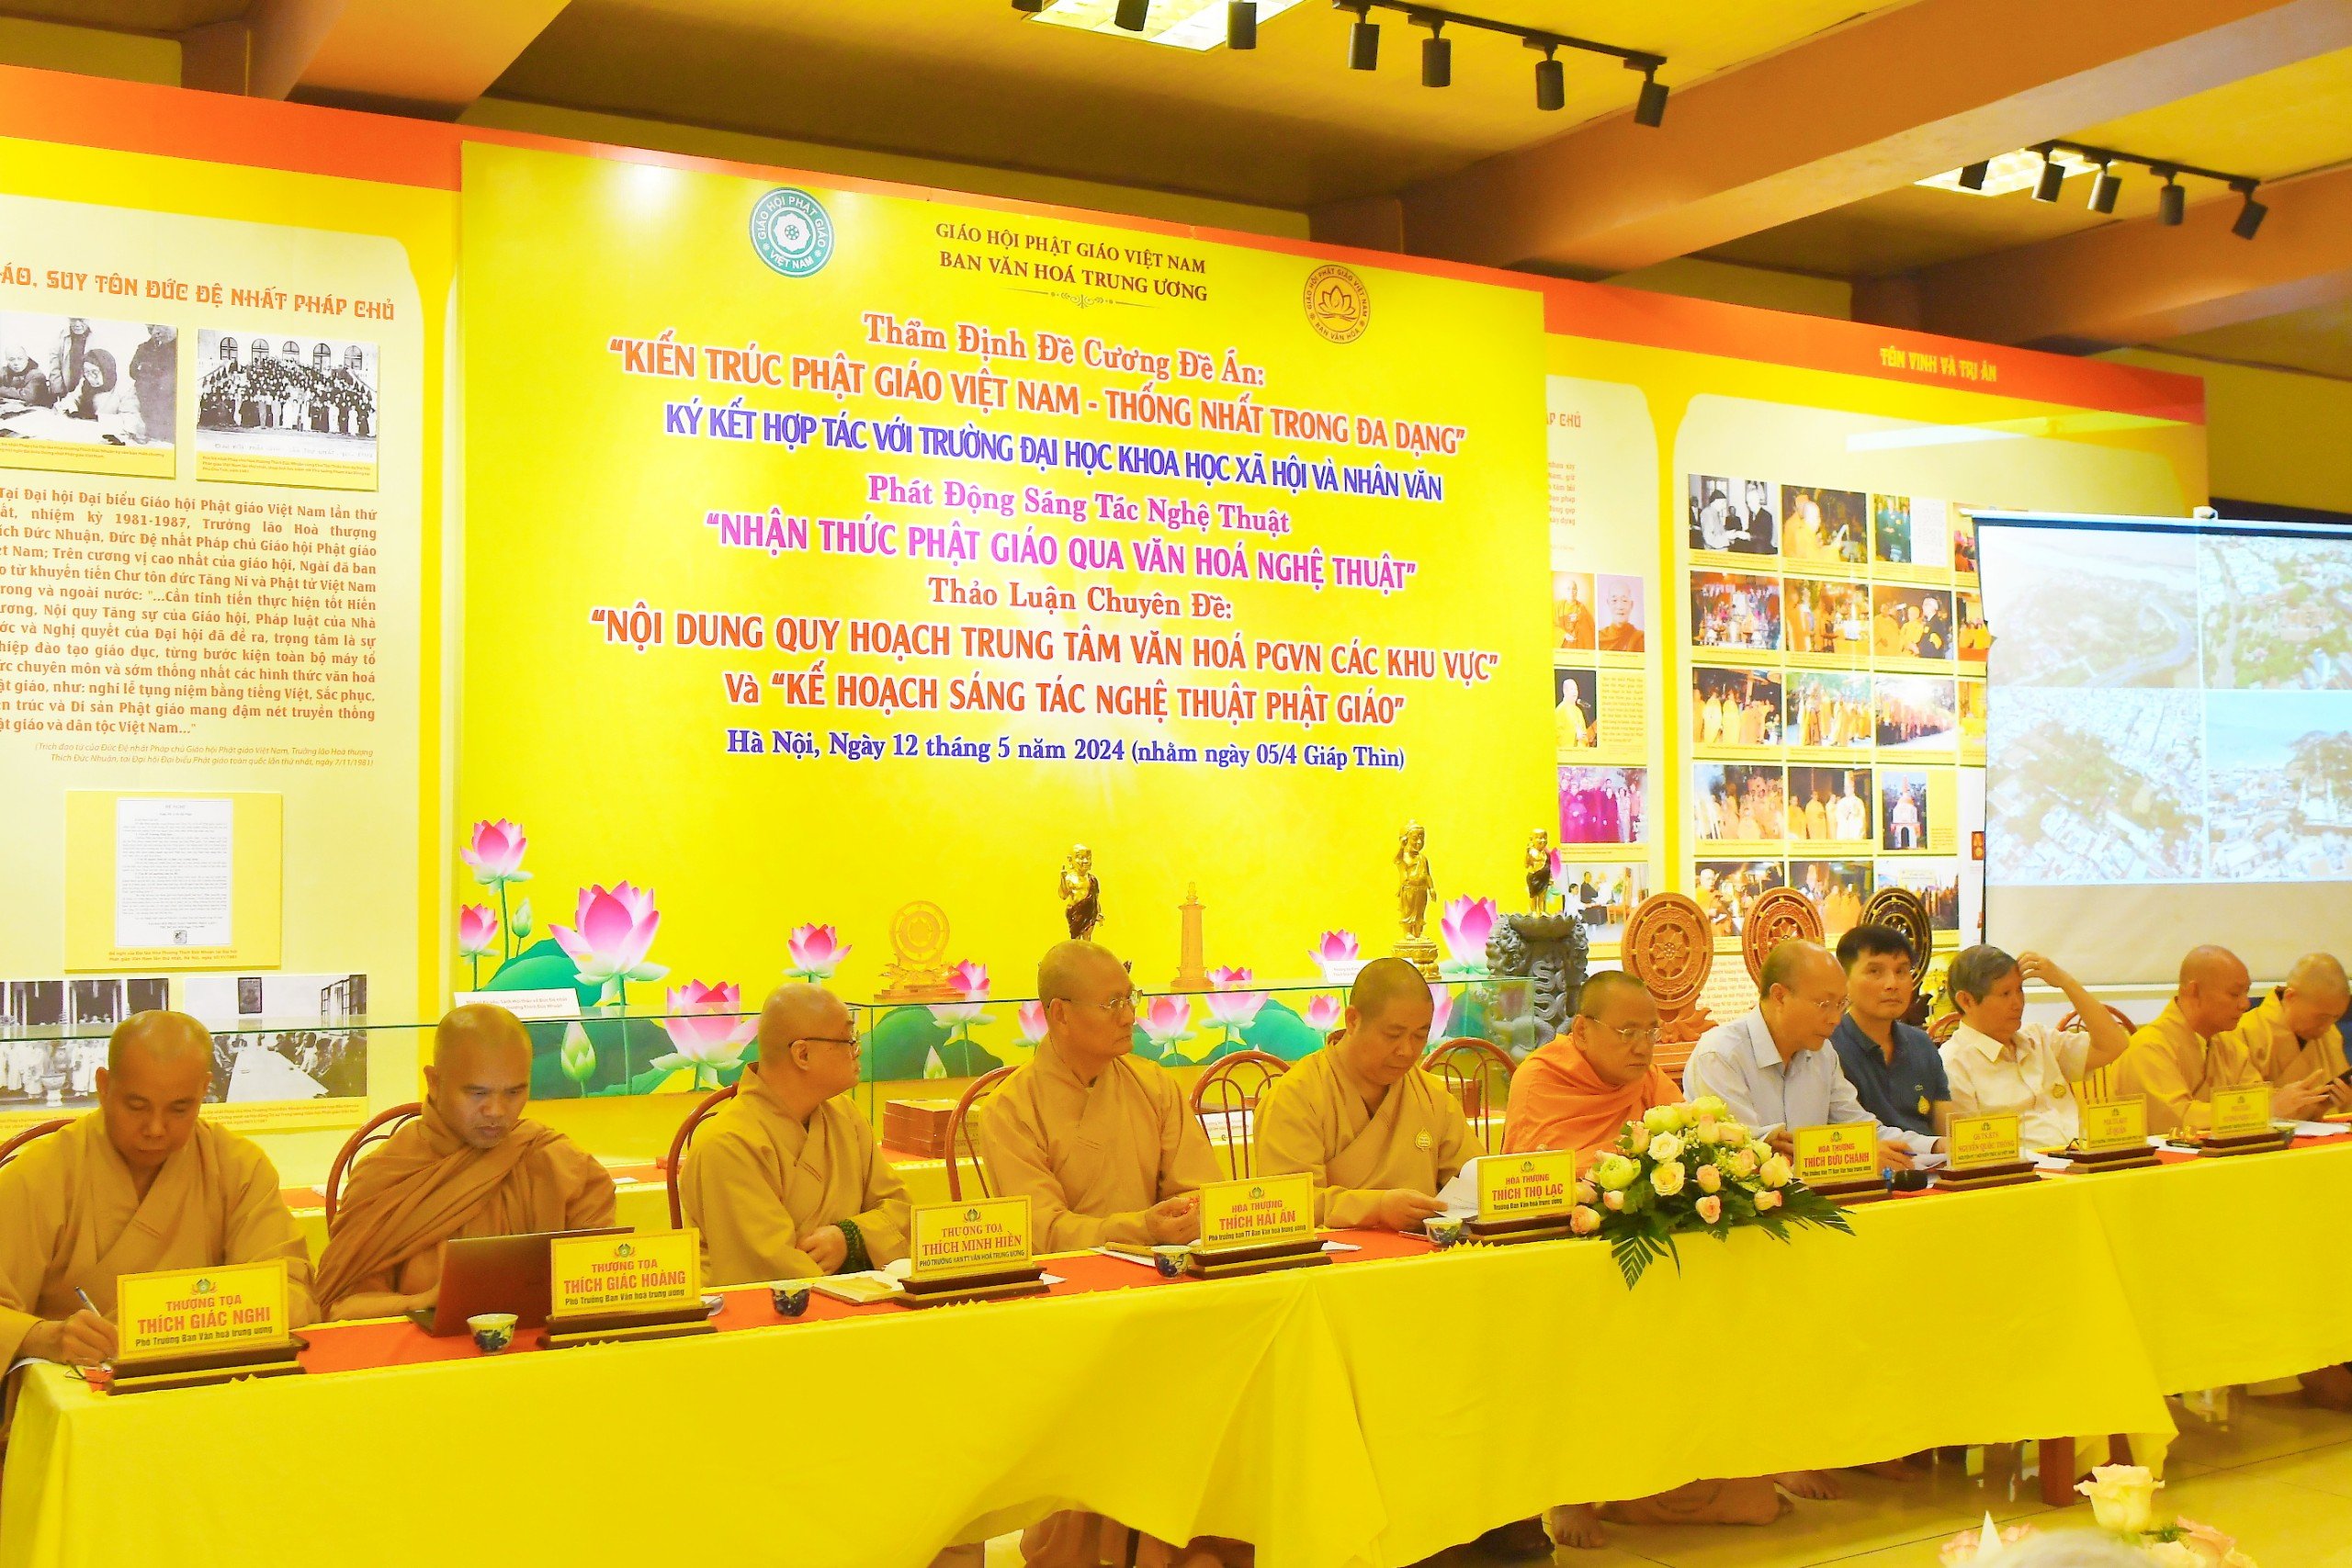 Thẩm định đề cương Kiến trúc Phật giáo Việt nam - thống nhất trong đa dạng và Đại lễ Phật đản DL 2024 PL2568 tại chùa Yên Phú, Hà nội.